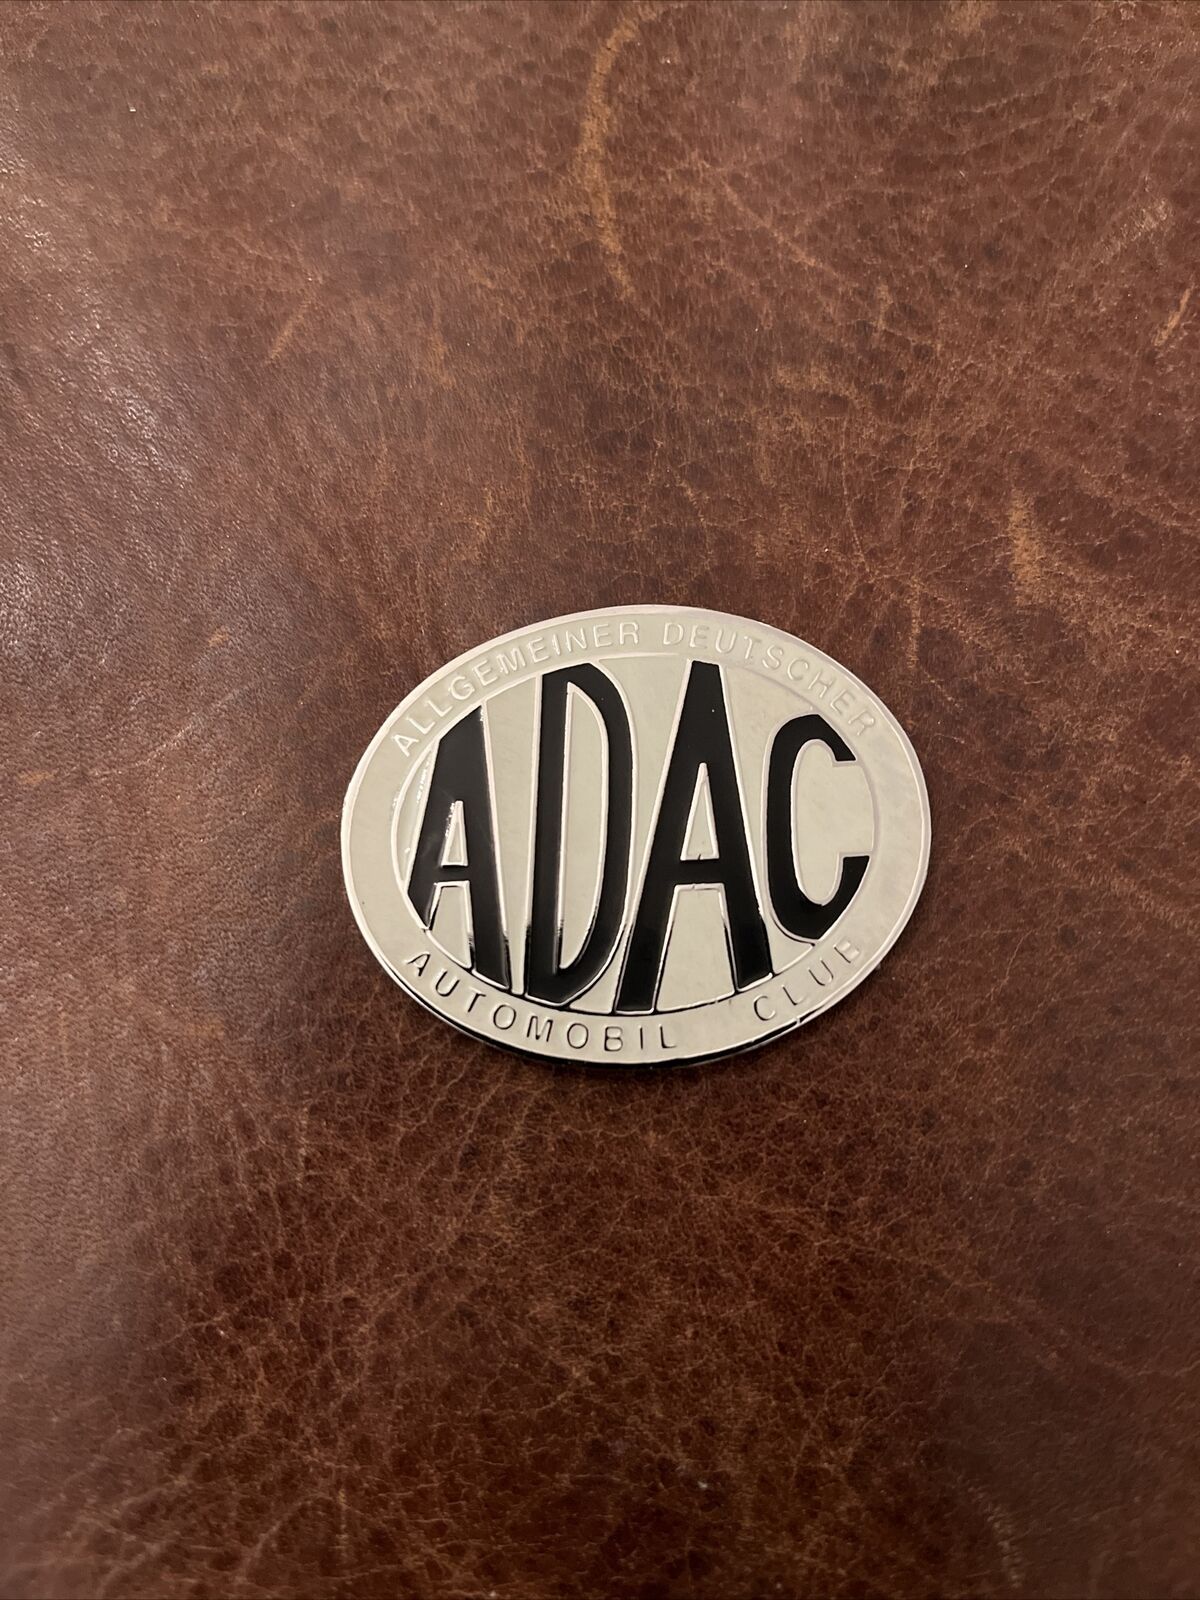 ADAC German Grill Dash Badge Germany 🇩🇪 Allgemeiner Deutscher Automobil-Club